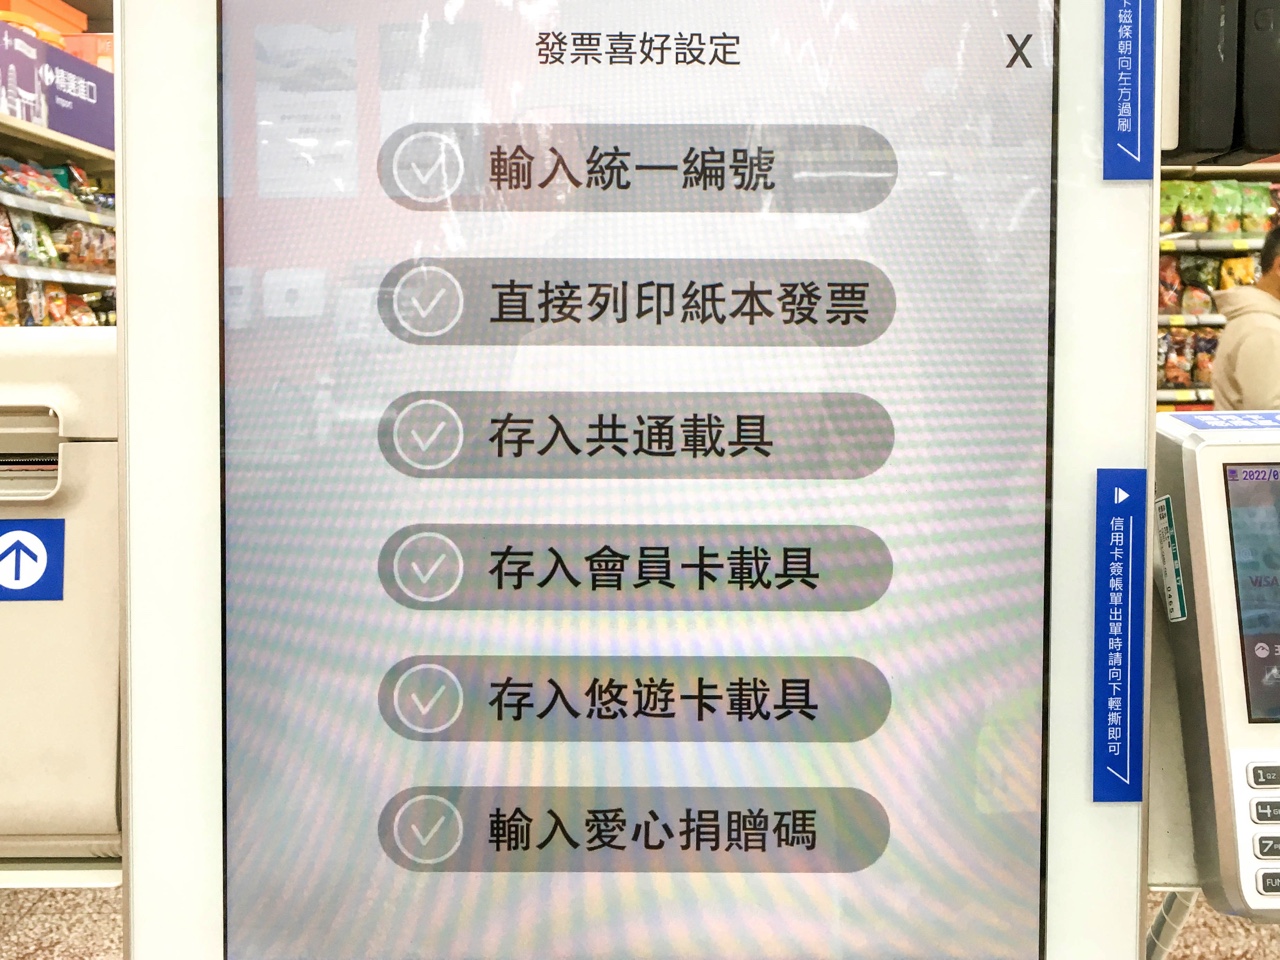 セルフレジによる電子レシートの保存方法選択画面